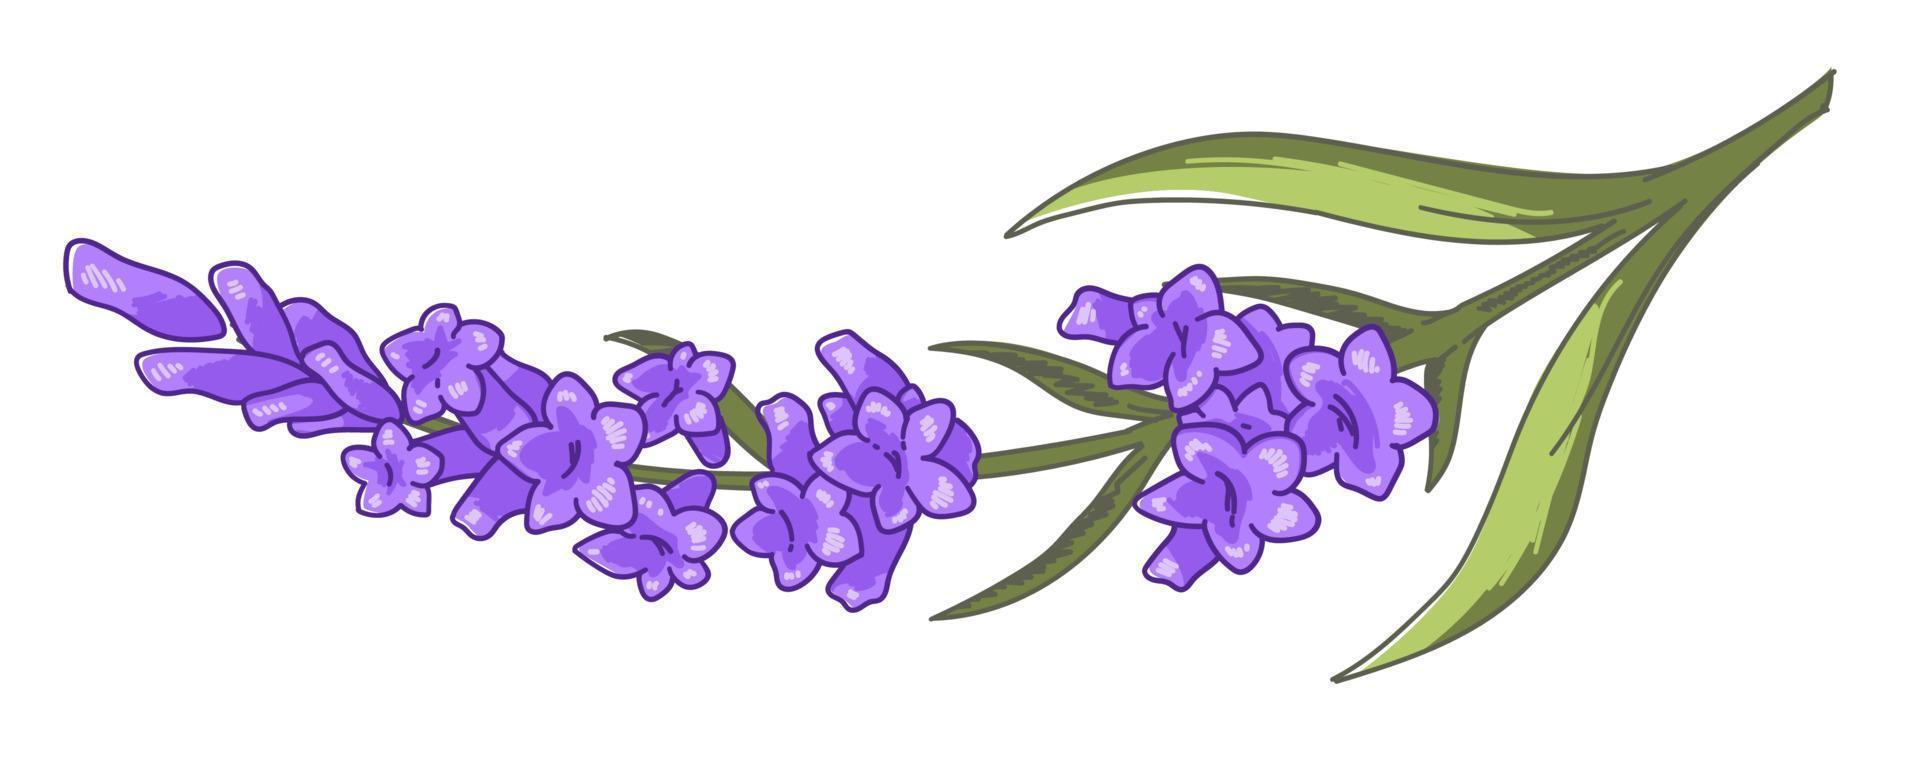 rama floral de lavanda con flor, decoración floral vector